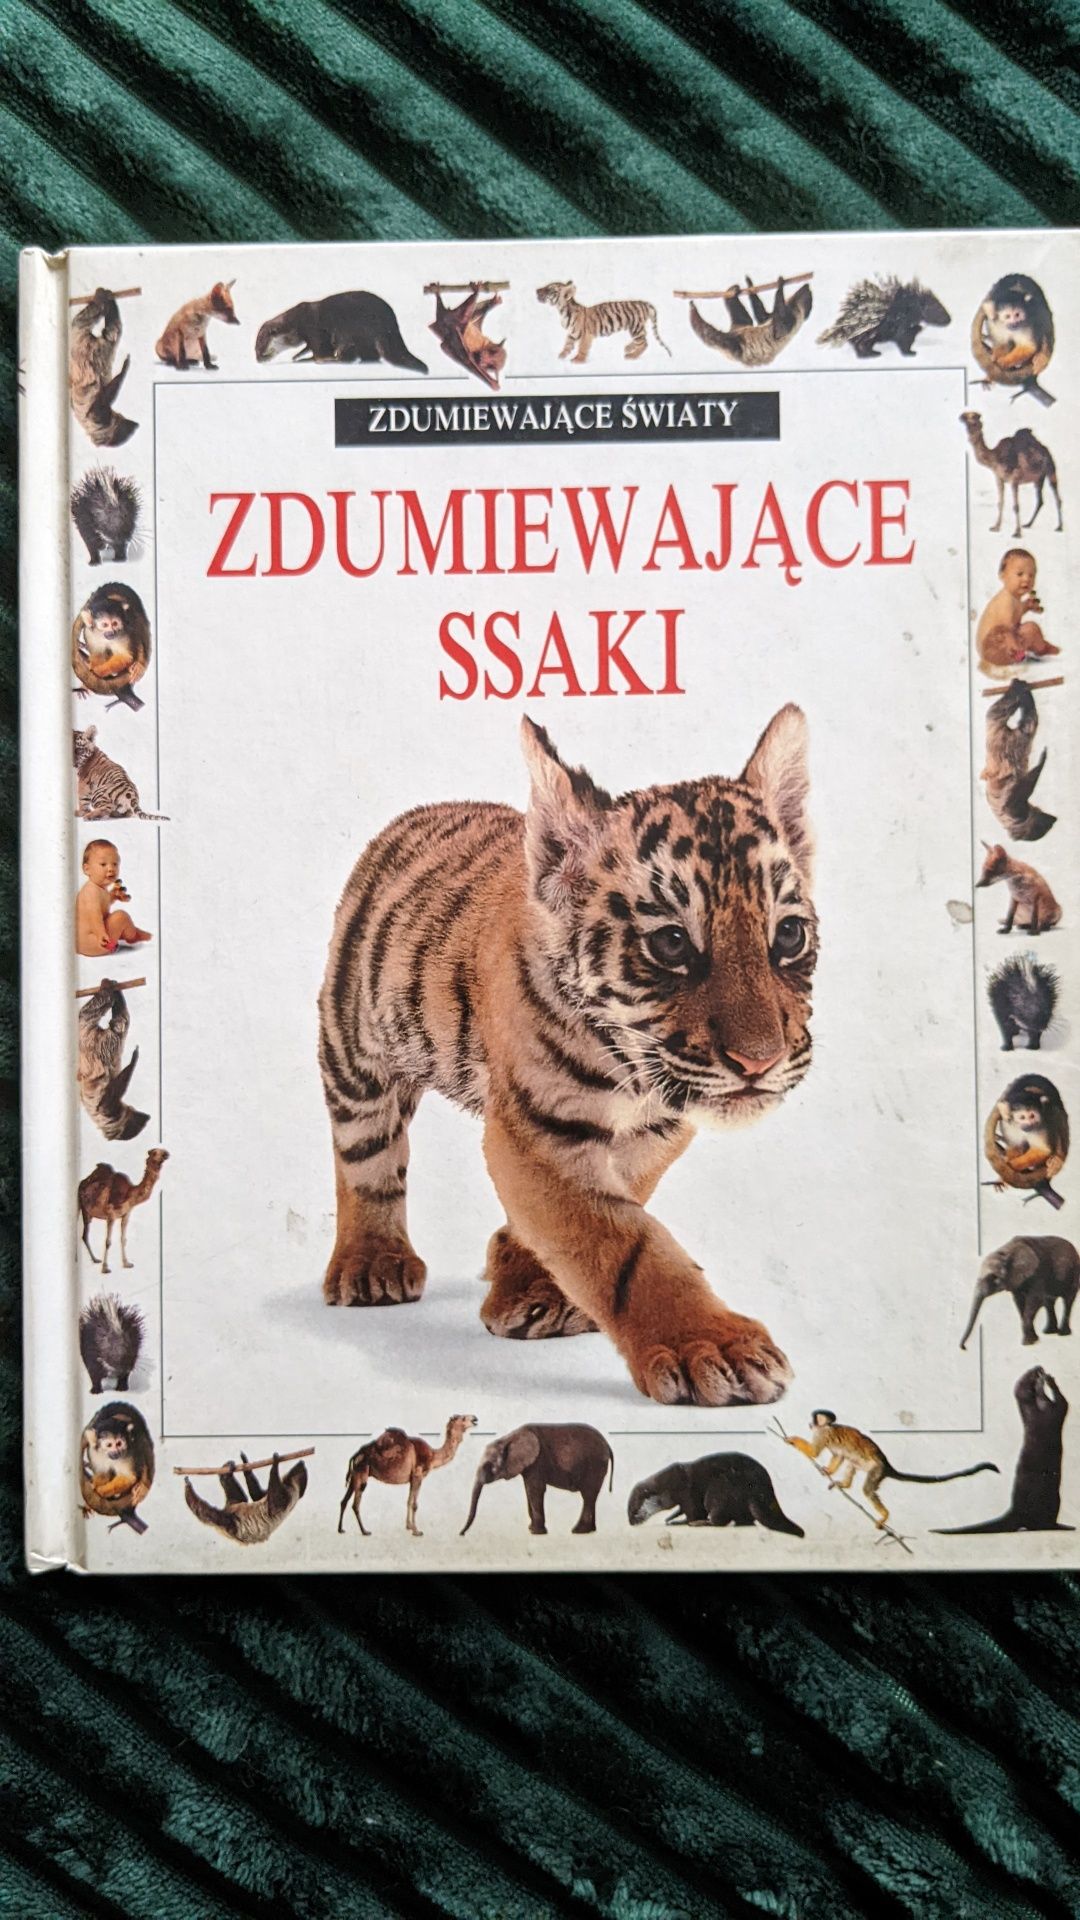 Zdumiewające ssaki. Książka dla dzieci.